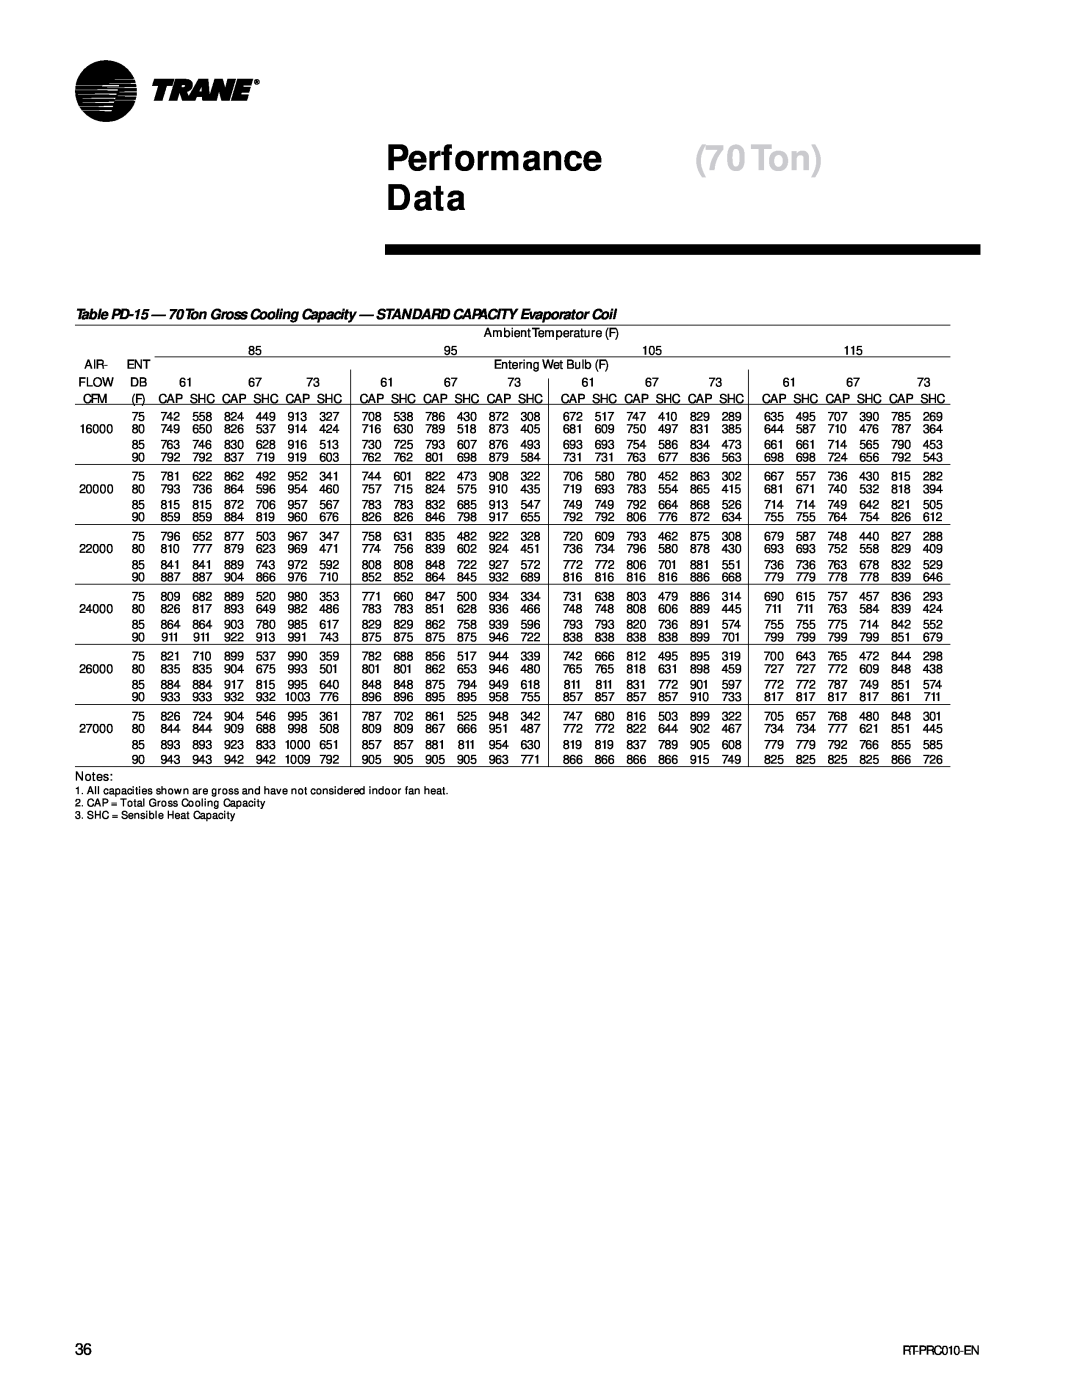 Trane RT-PRC010-EN manual Performance 70Ton Data 